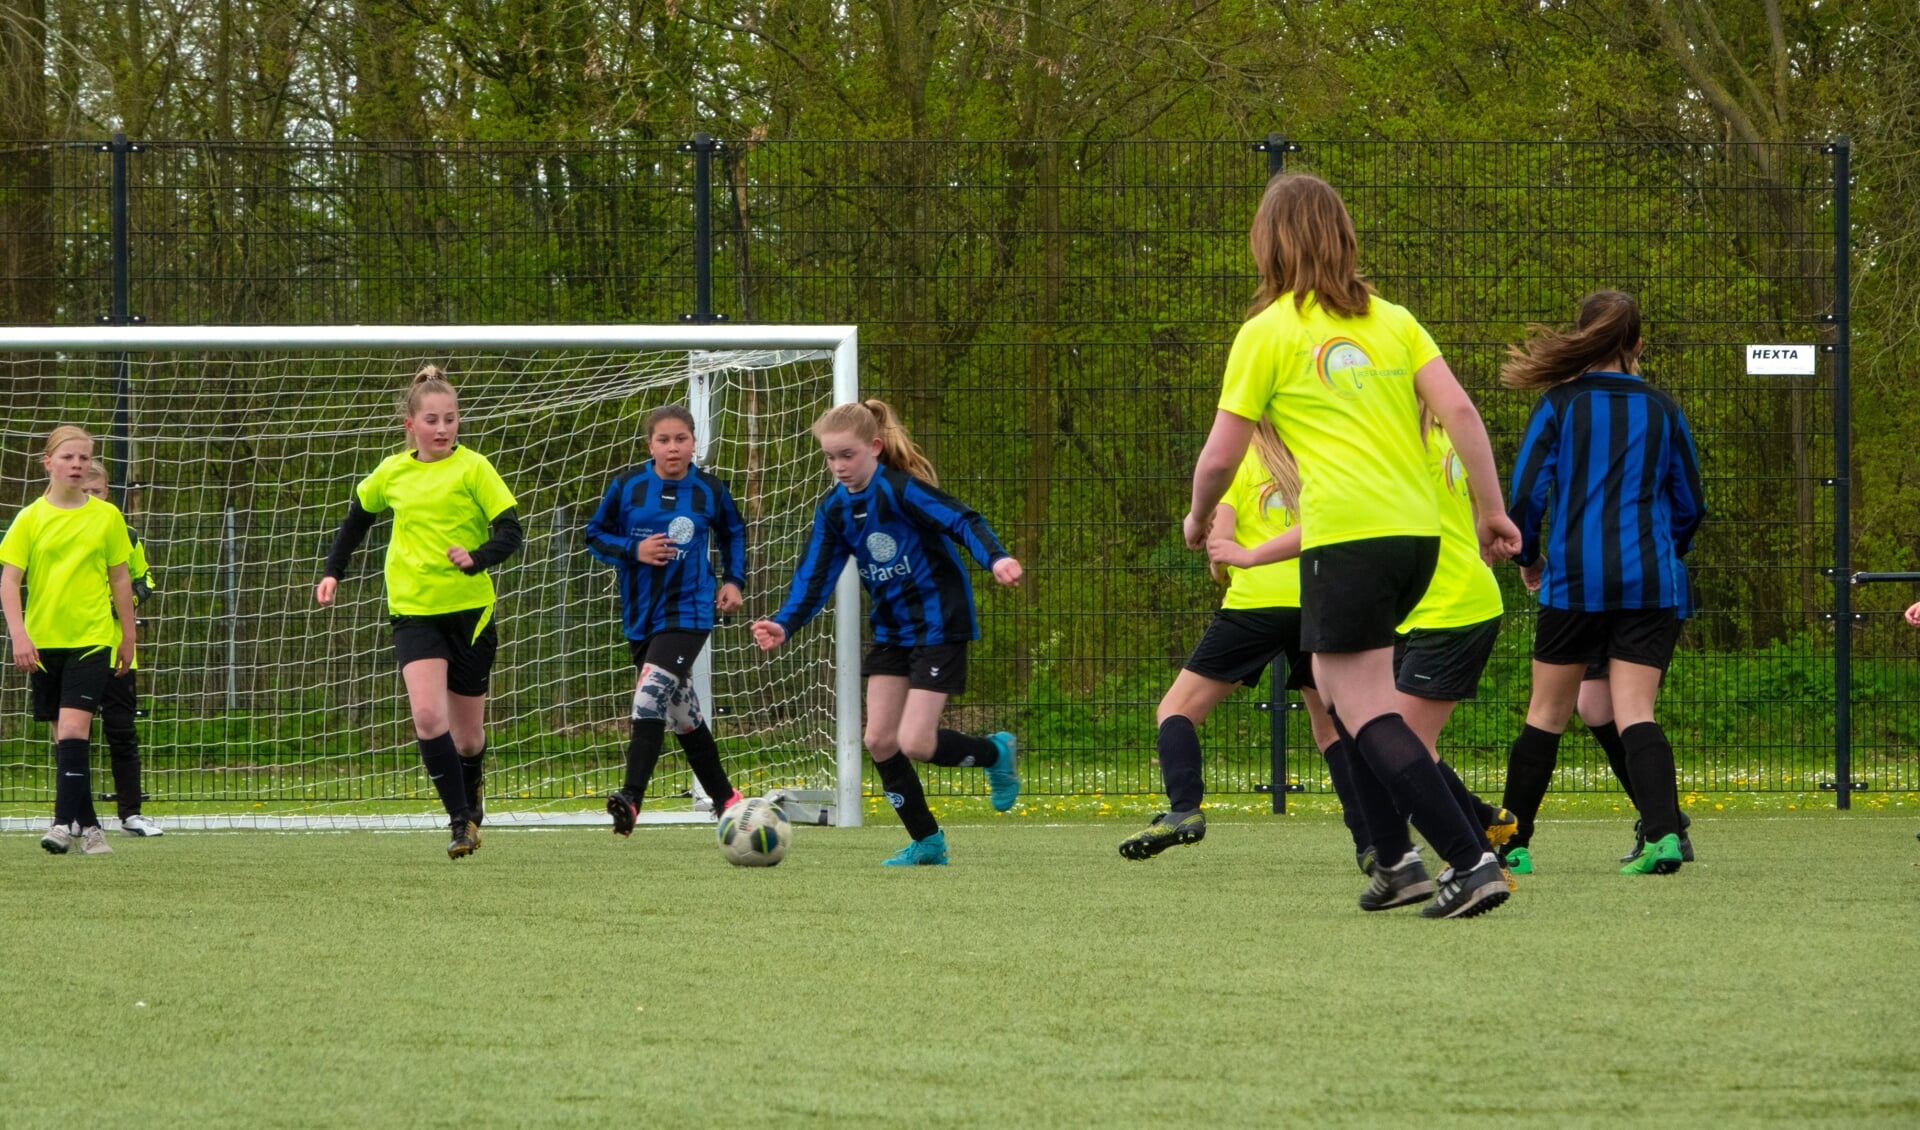 • De meidenteams van basisscholen de Regenboog uit Nieuwendijk en De Parel uit Rijswijk lieten zich op hun sportiefst zien.